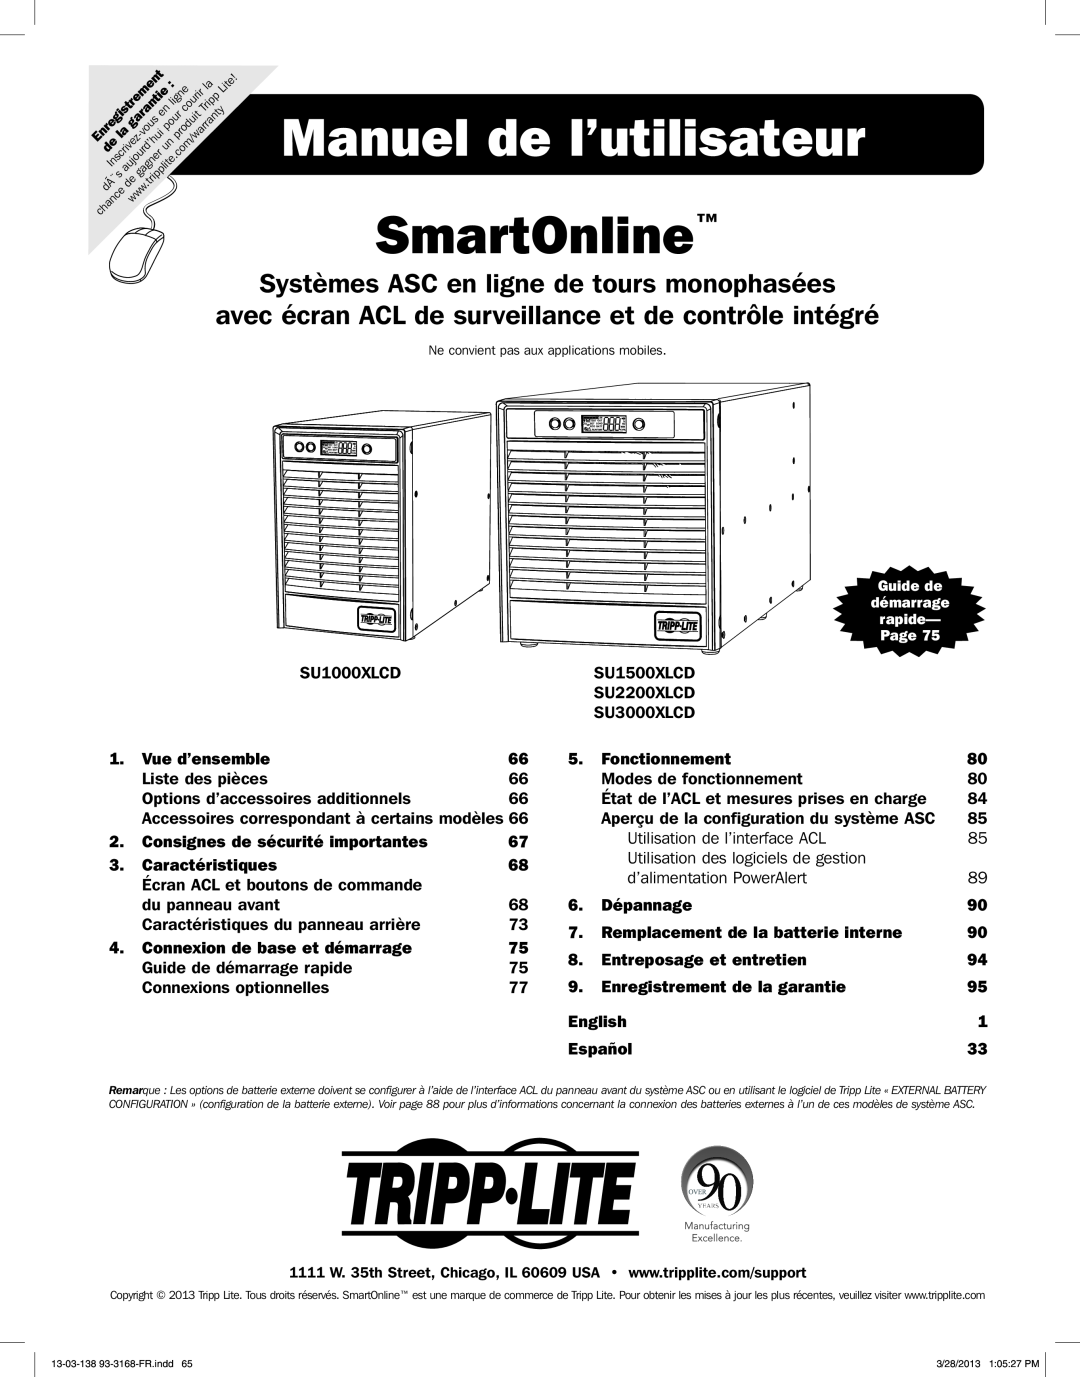 Tripp Lite SU1000XLCD Manuel de l’utilisateur SmartOnline, Systèmes ASC en ligne de tours monophasées, Vue d’ensemble 